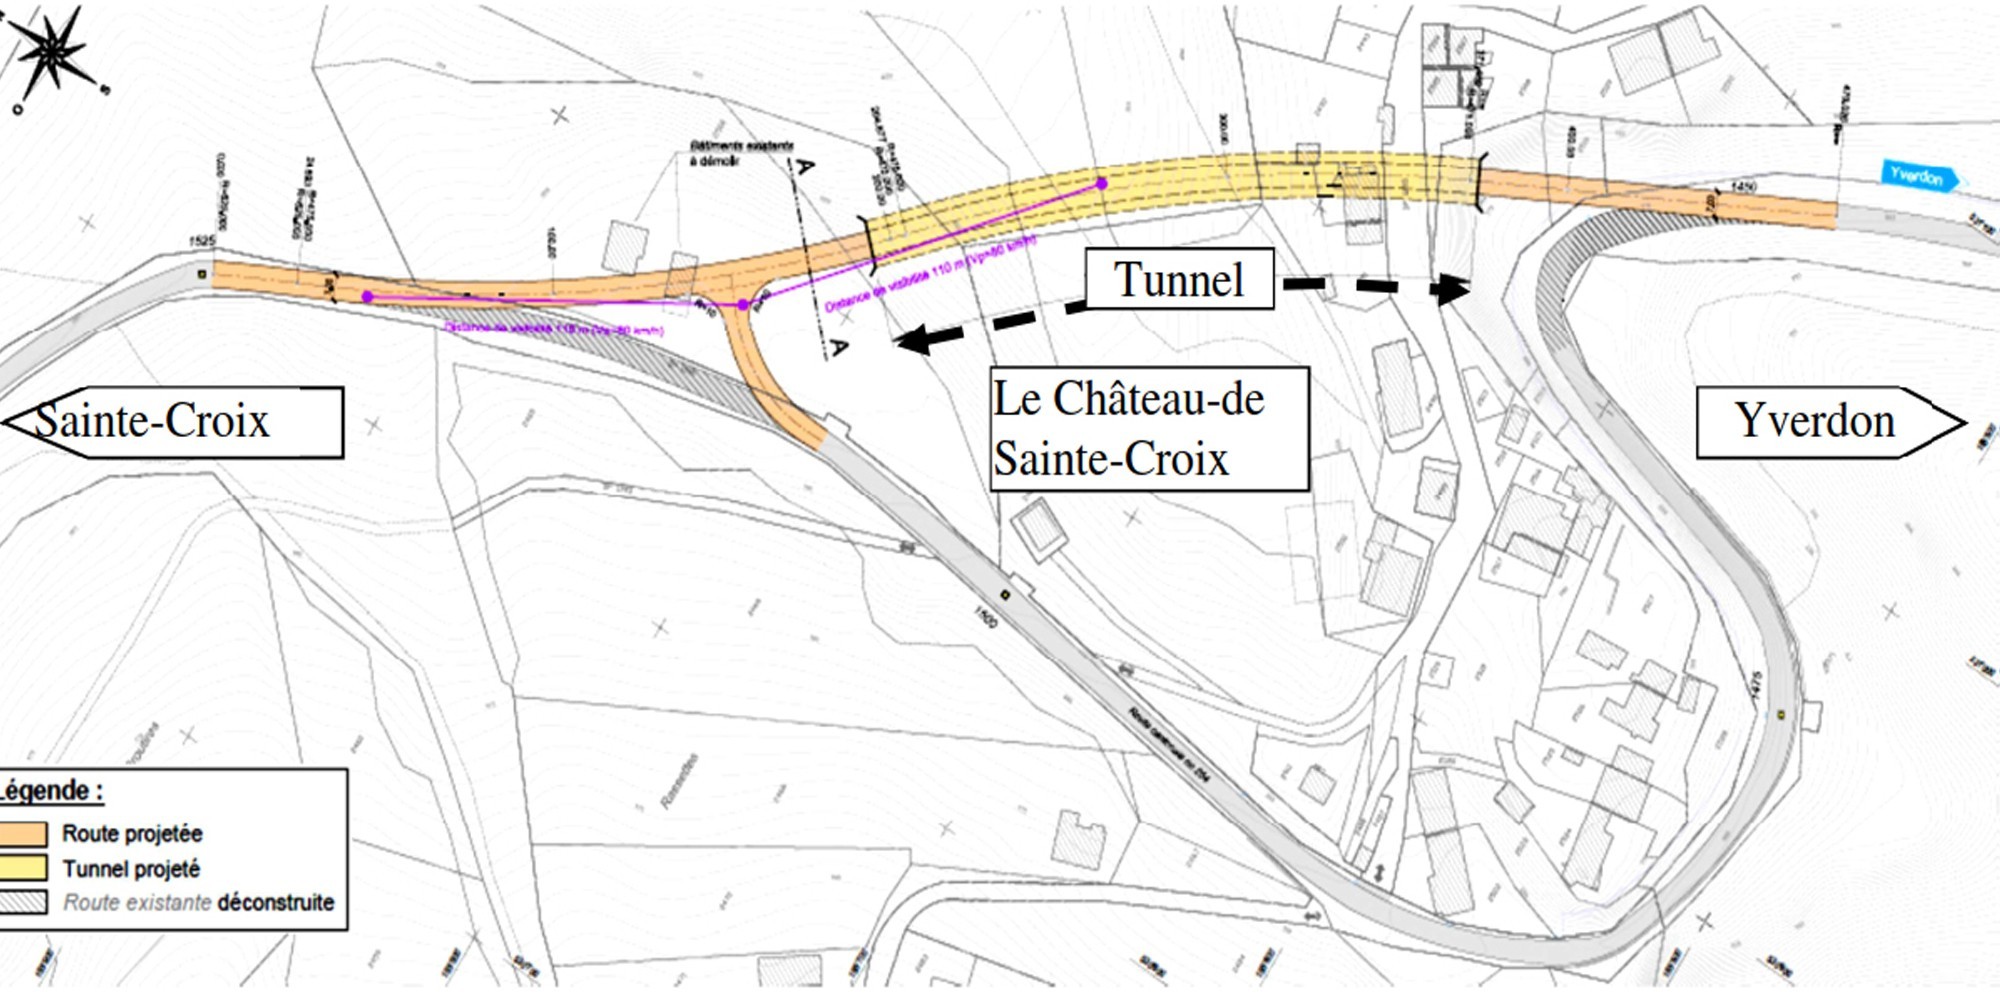 Tunnel Sainte-Croix